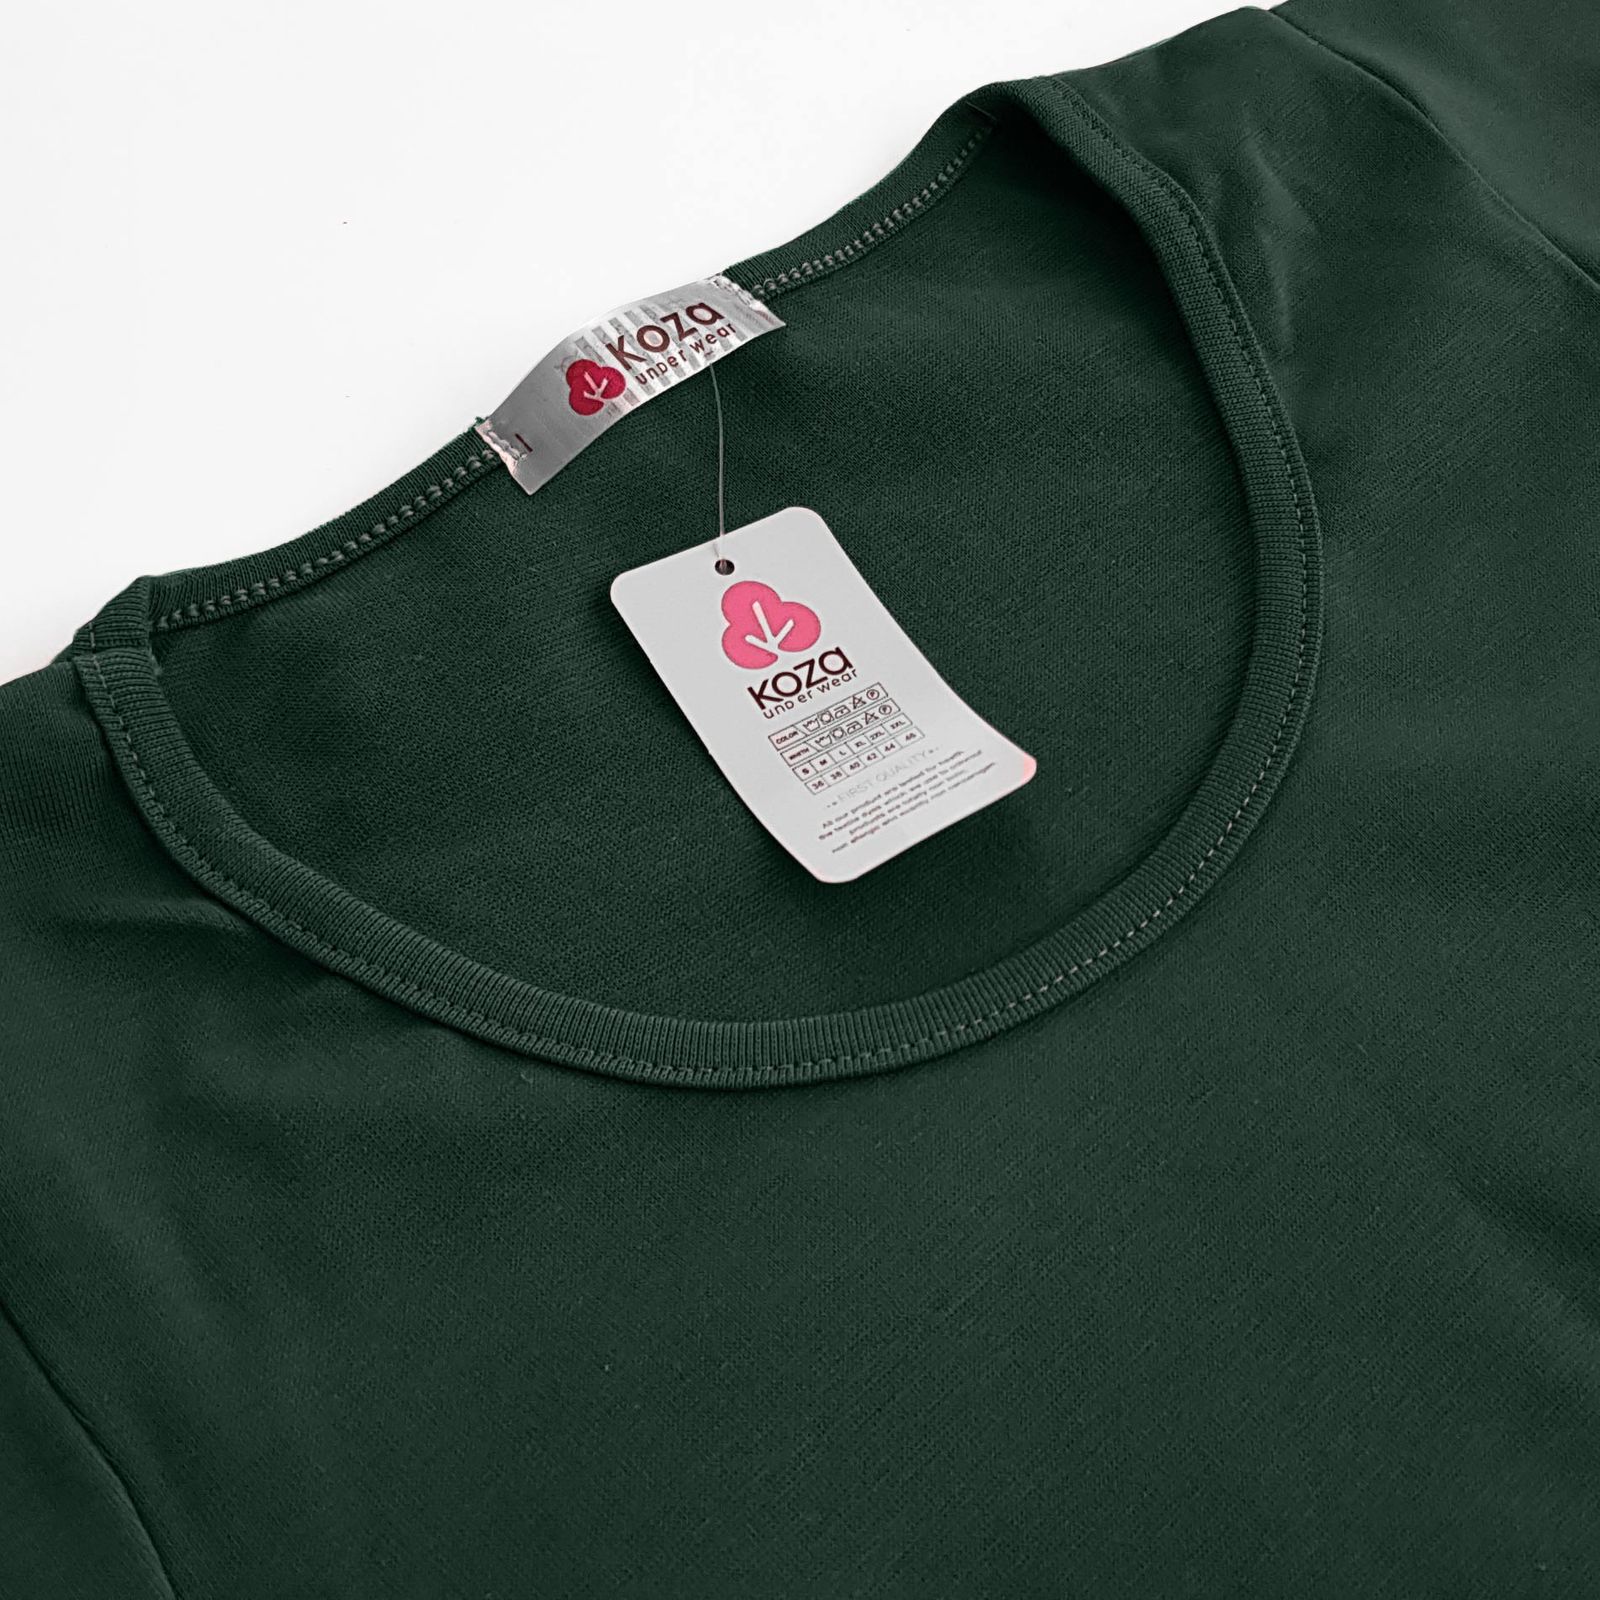 پیراهن زنانه کوزا مدل آستین چین دار کد 9230 رنگ سبز -  - 4